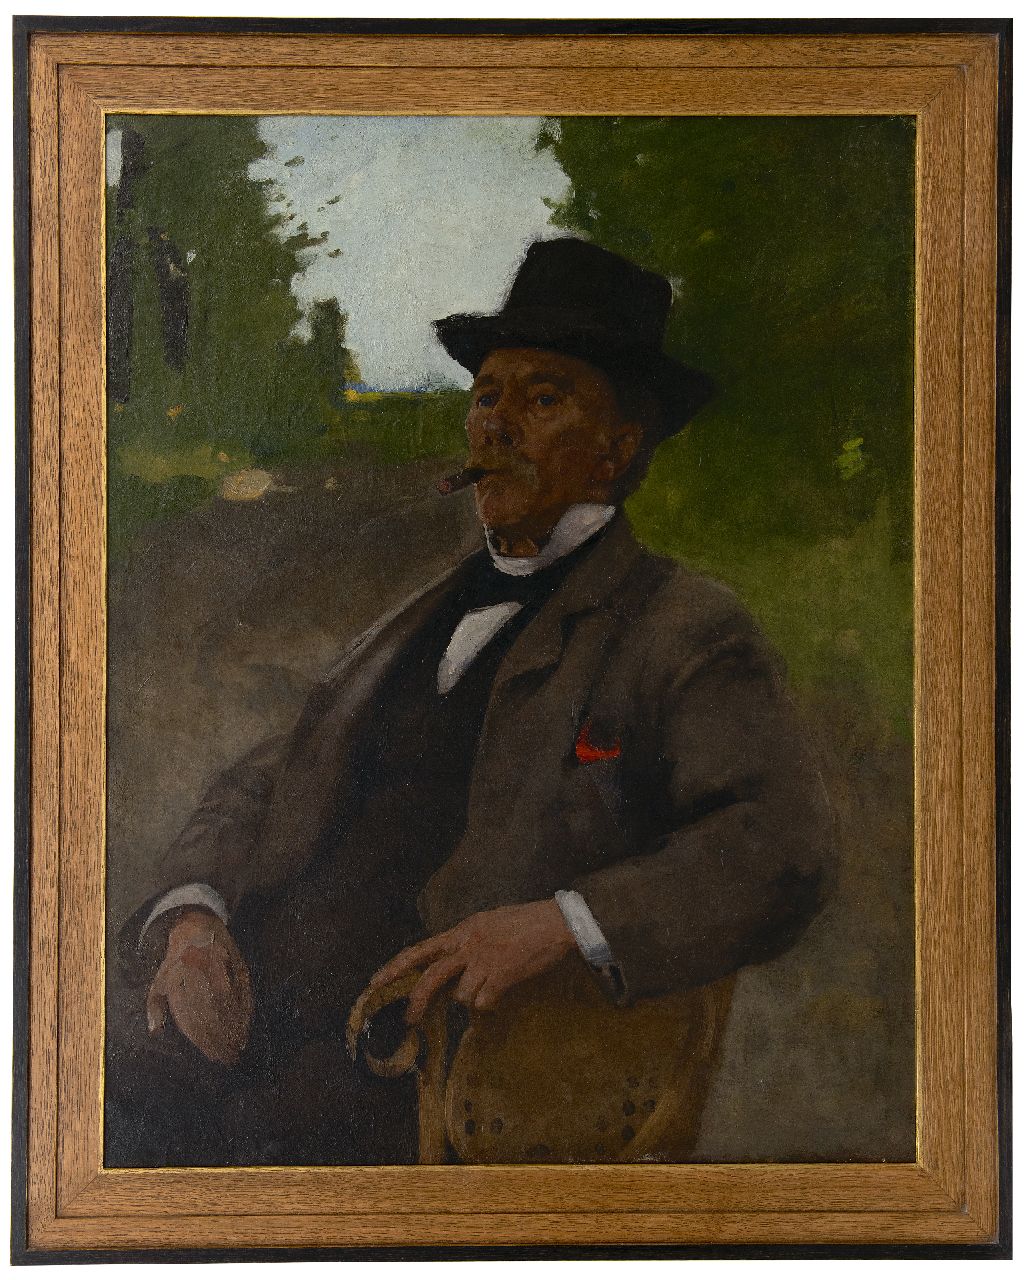 Witsen W.A.  | 'Willem' Arnold Witsen | Schilderijen te koop aangeboden | Portret van Jonas Witsen, de vader van de schilder, olieverf op doek 100,2 x 78,6 cm, te dateren ca. 1890